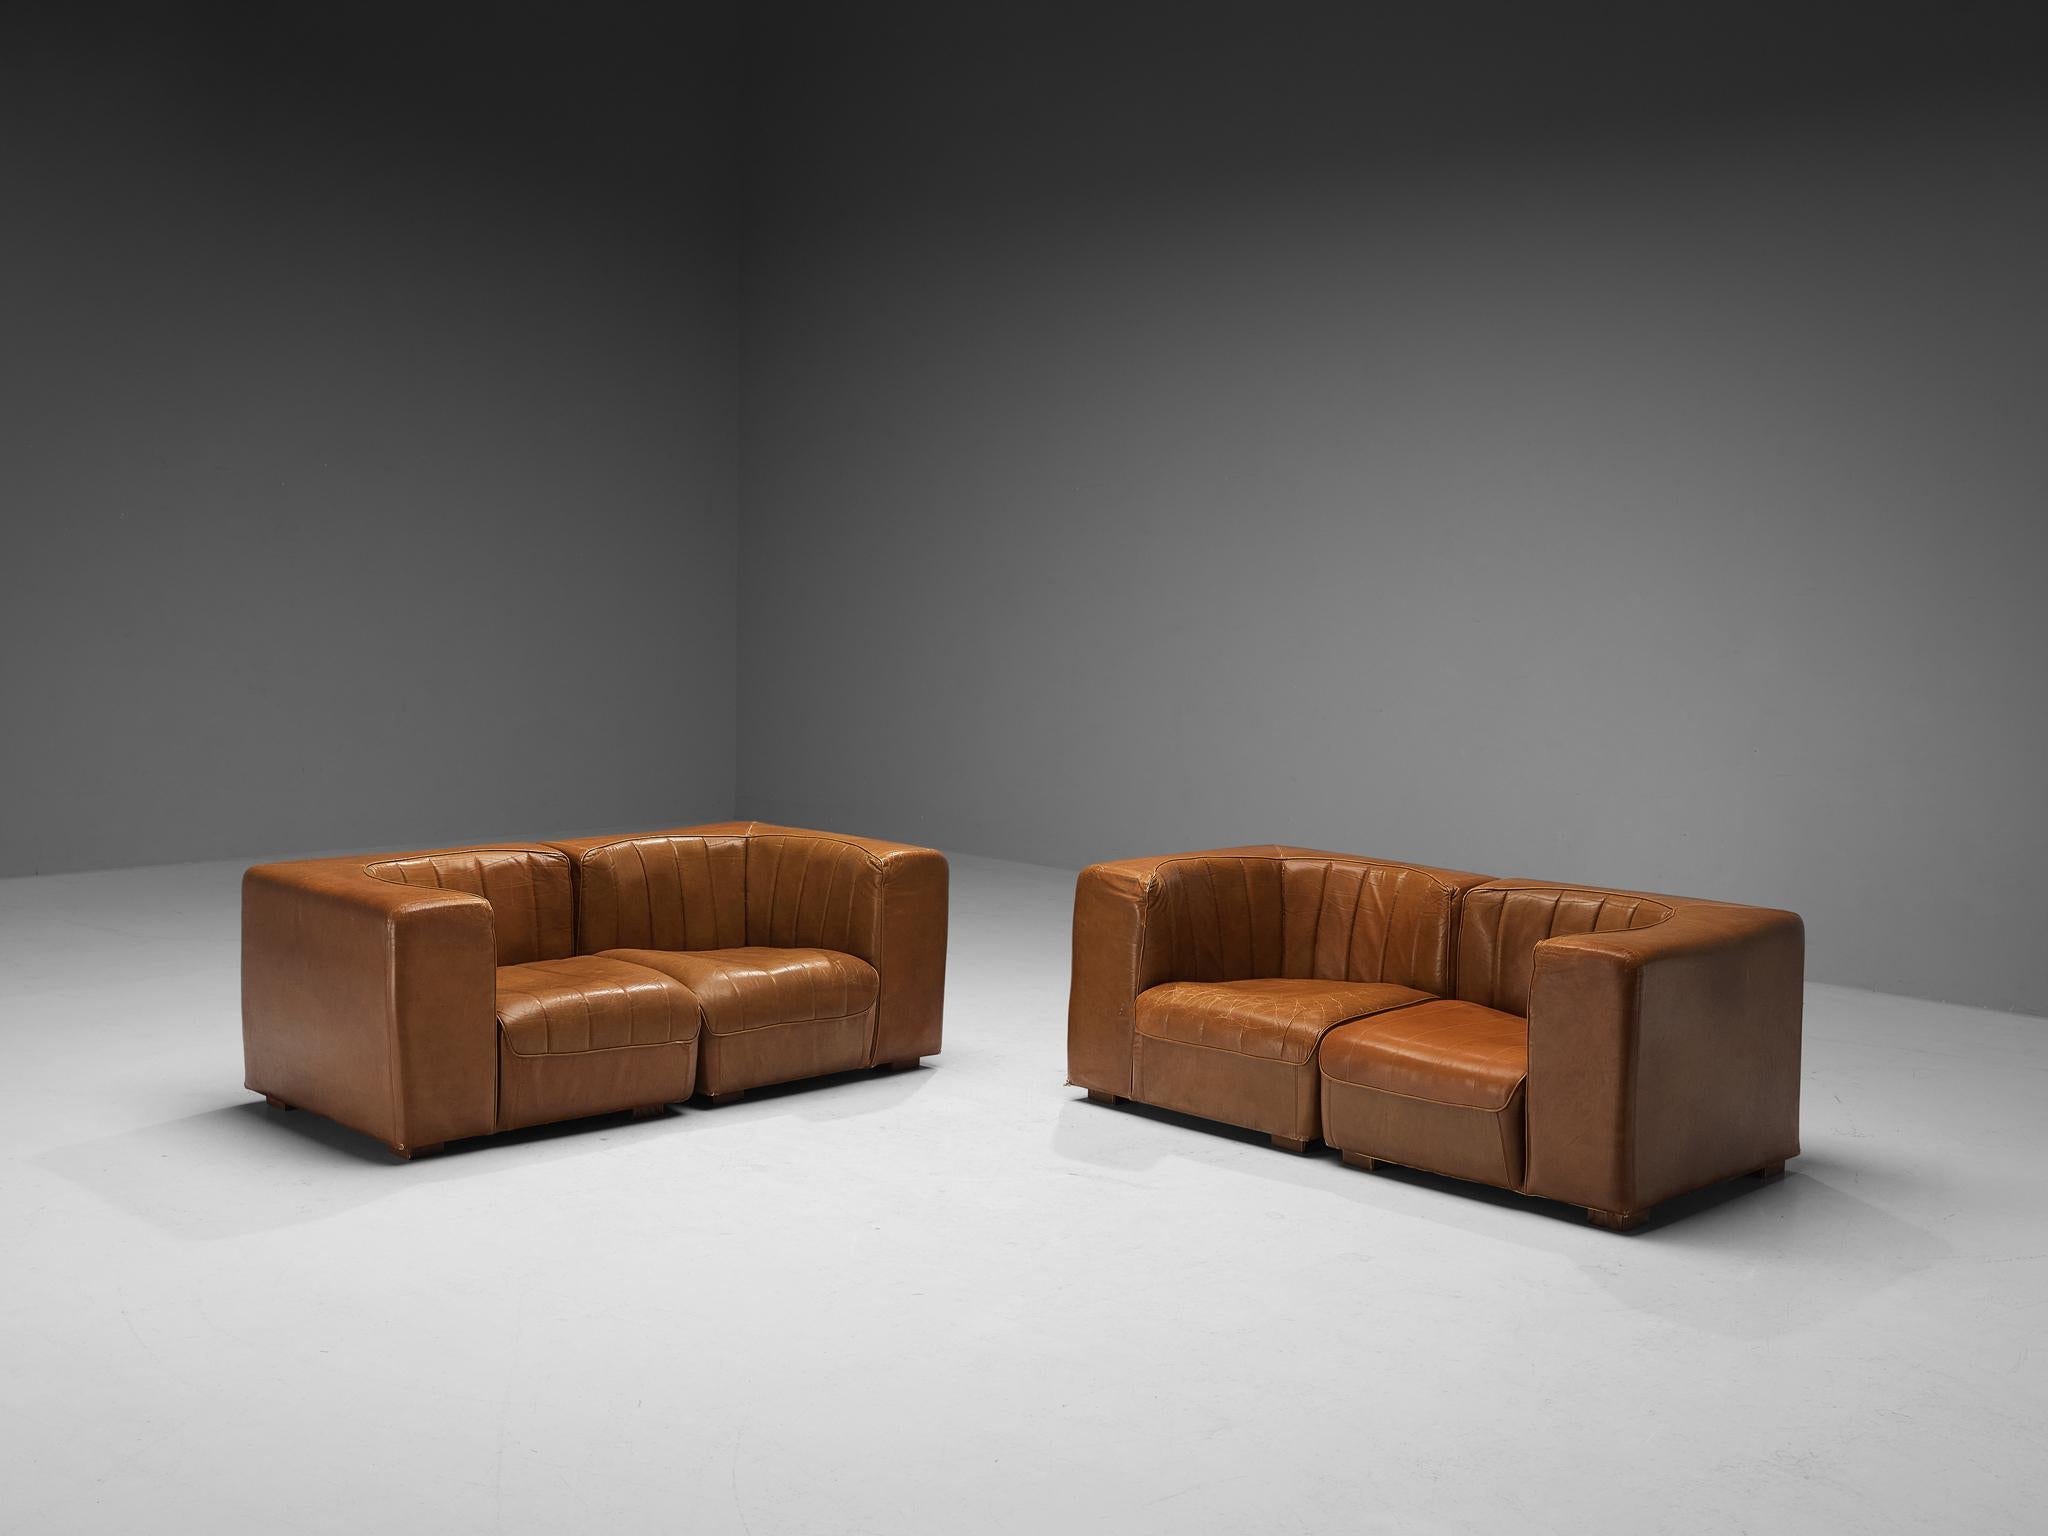 Tito Agnoli für Arflex, zweisitzige Sofas, Modell '9000', patiniertes Leder, Holz, Italien, 1969

Dieses Design zeichnet sich durch einen kubischen Außenrahmen aus, der einen optisch interessanten Kontrast zum runden Sitz bildet. Beim Sitzen